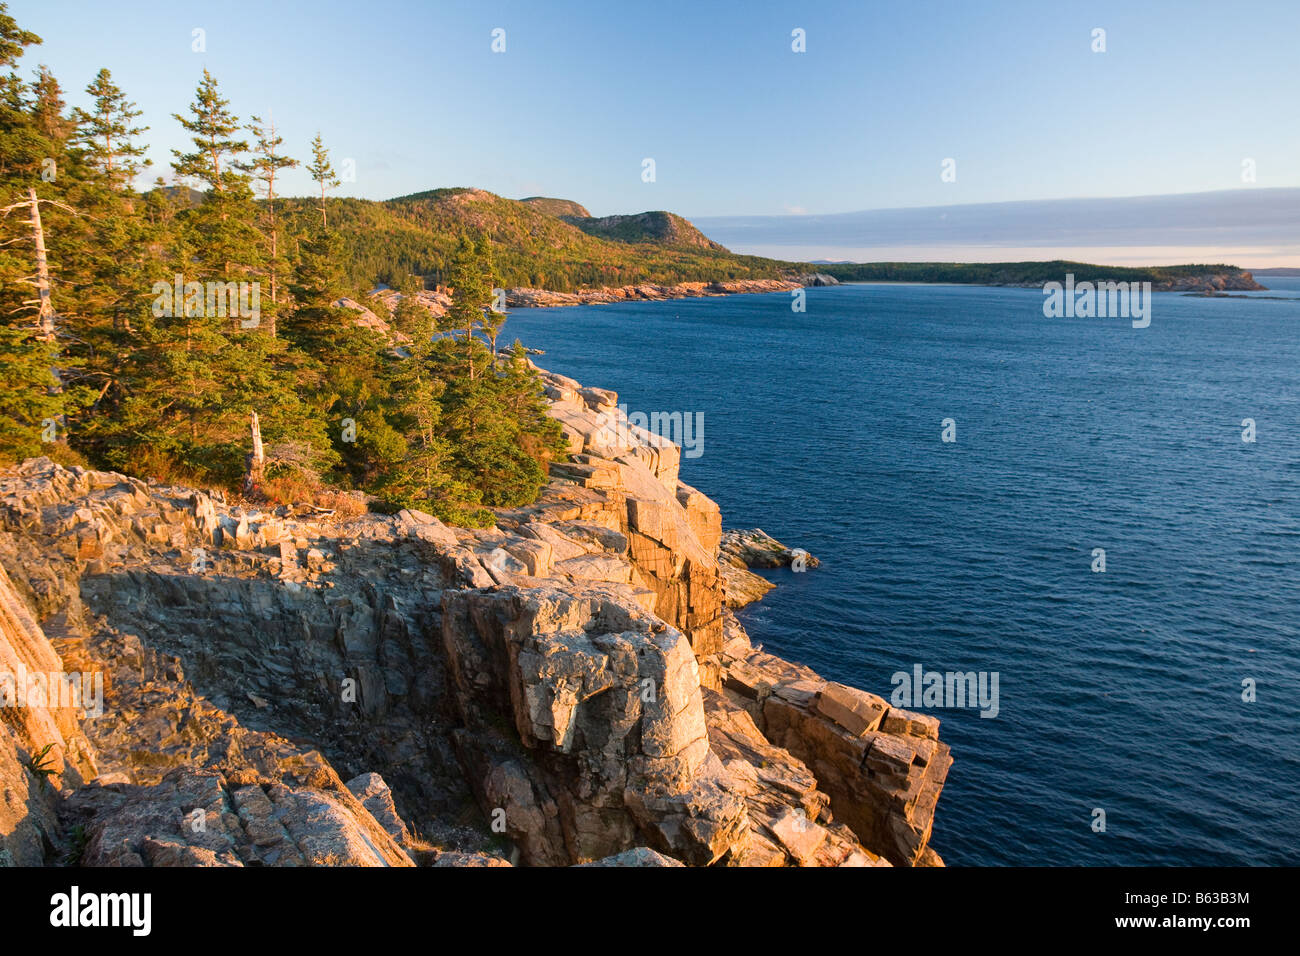 Soir d'été le long de la côte rocheuse de l'Acadia National Park, Maine, la Nouvelle Angleterre, USA. Banque D'Images